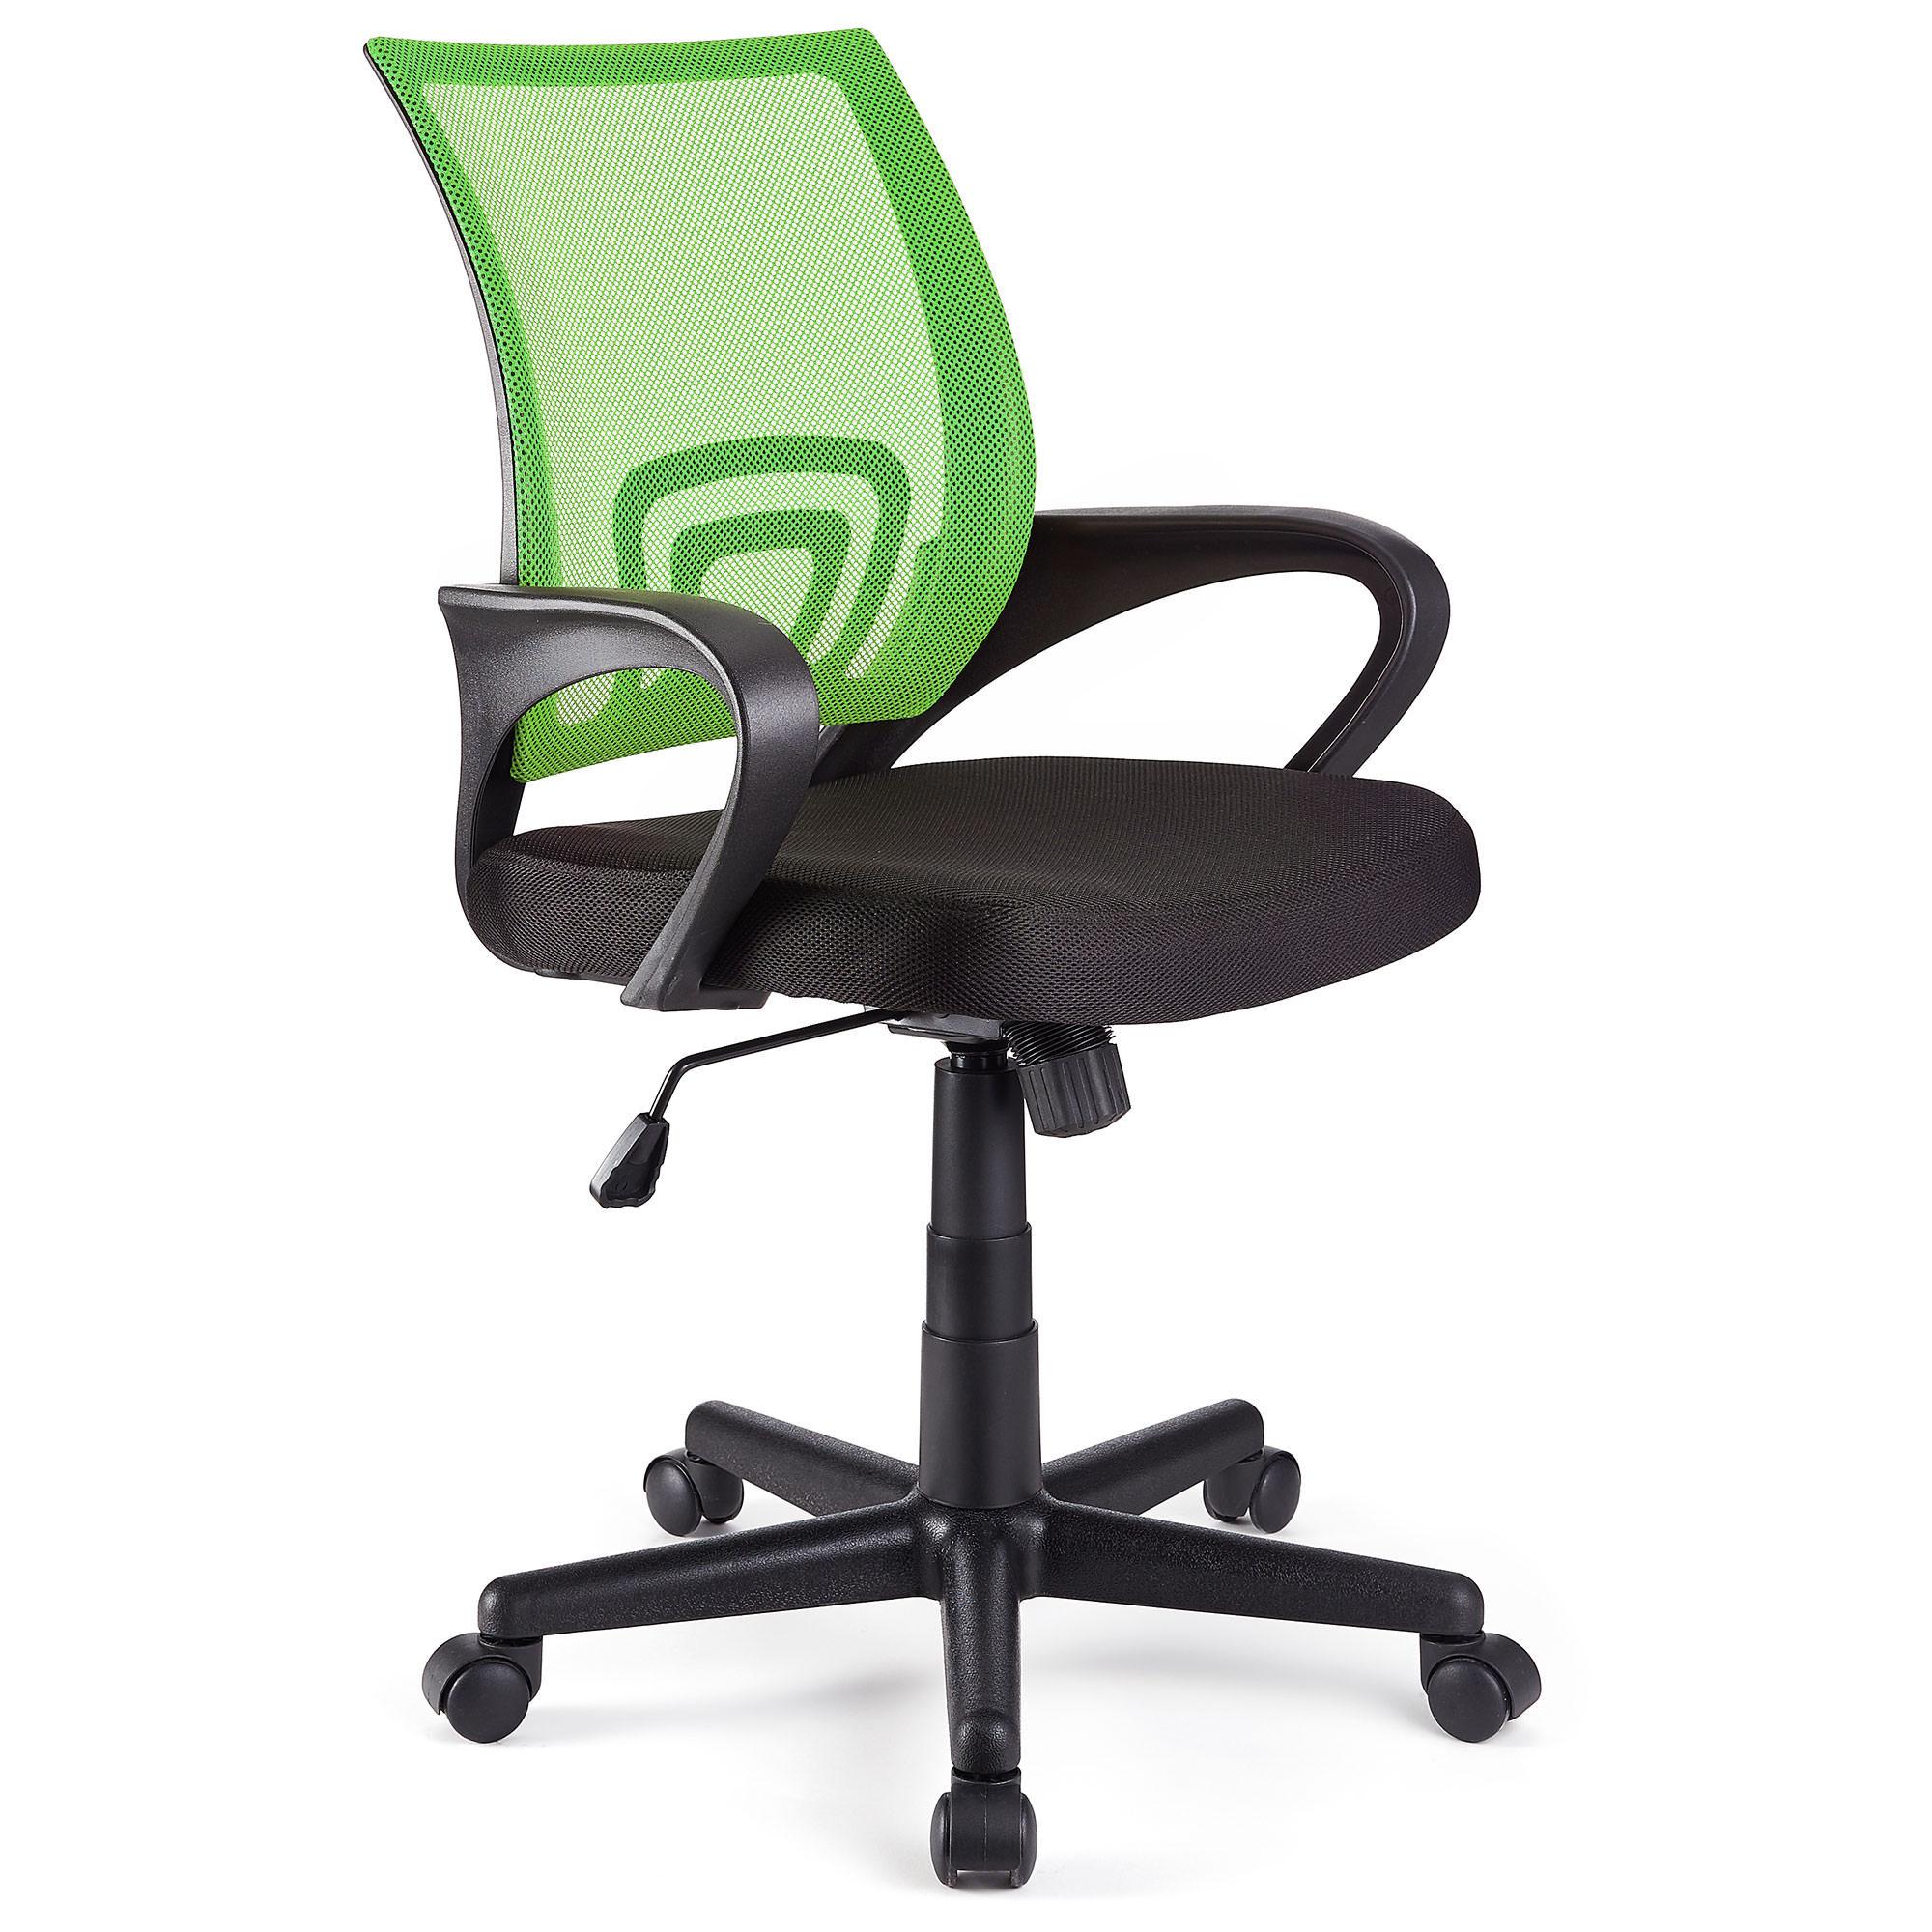 Cadeira de Escritório SEUL, Design Atractivo, Assento Acolchoado, Cor Verde